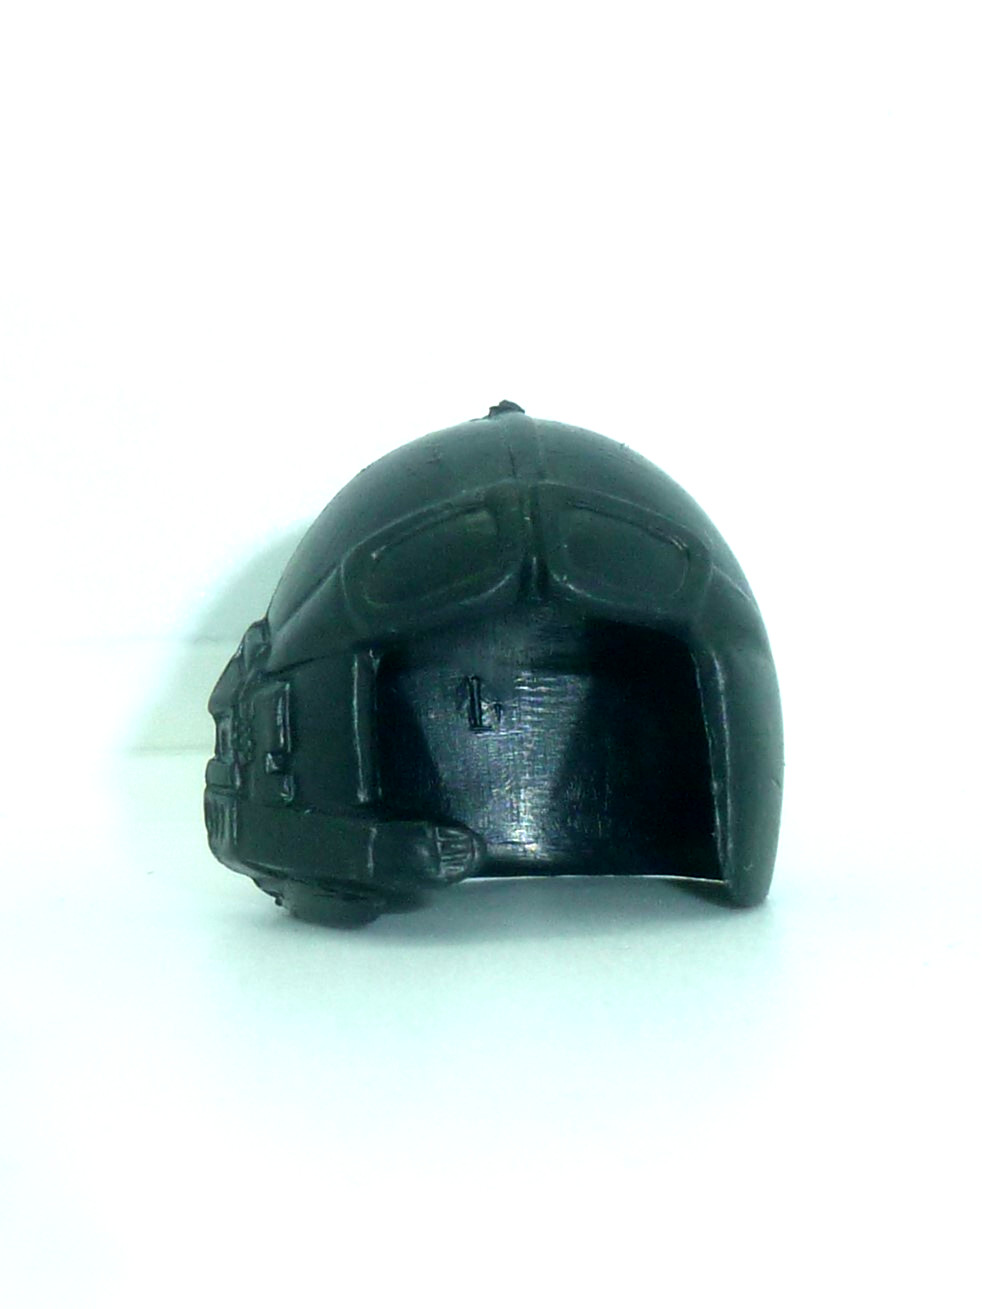 Nocturna helmet